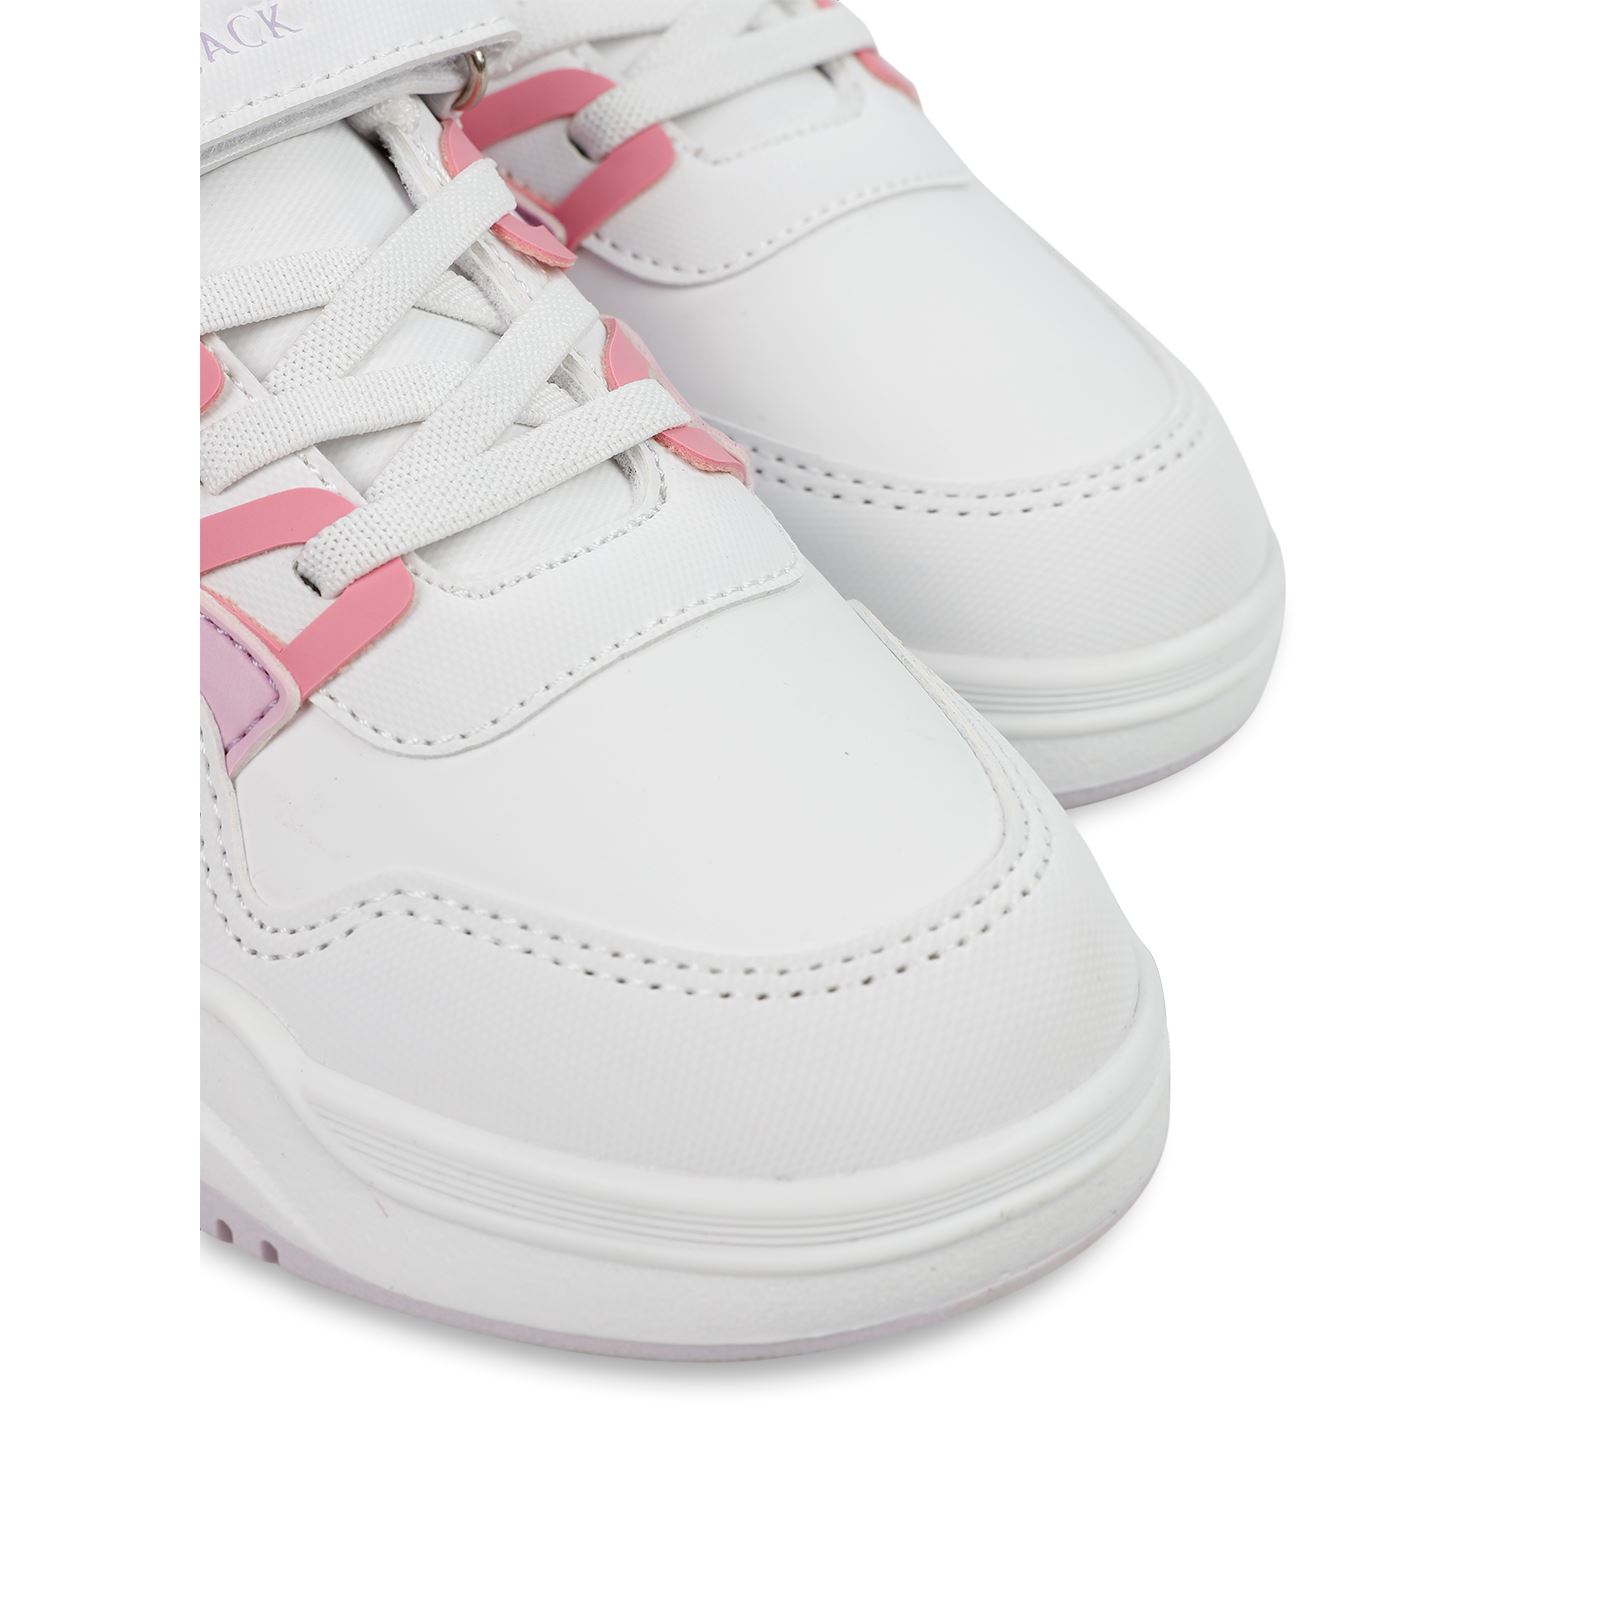 Lumberjack Kız Çocuk Spor Ayakkabı 31-35 Numara Beyaz